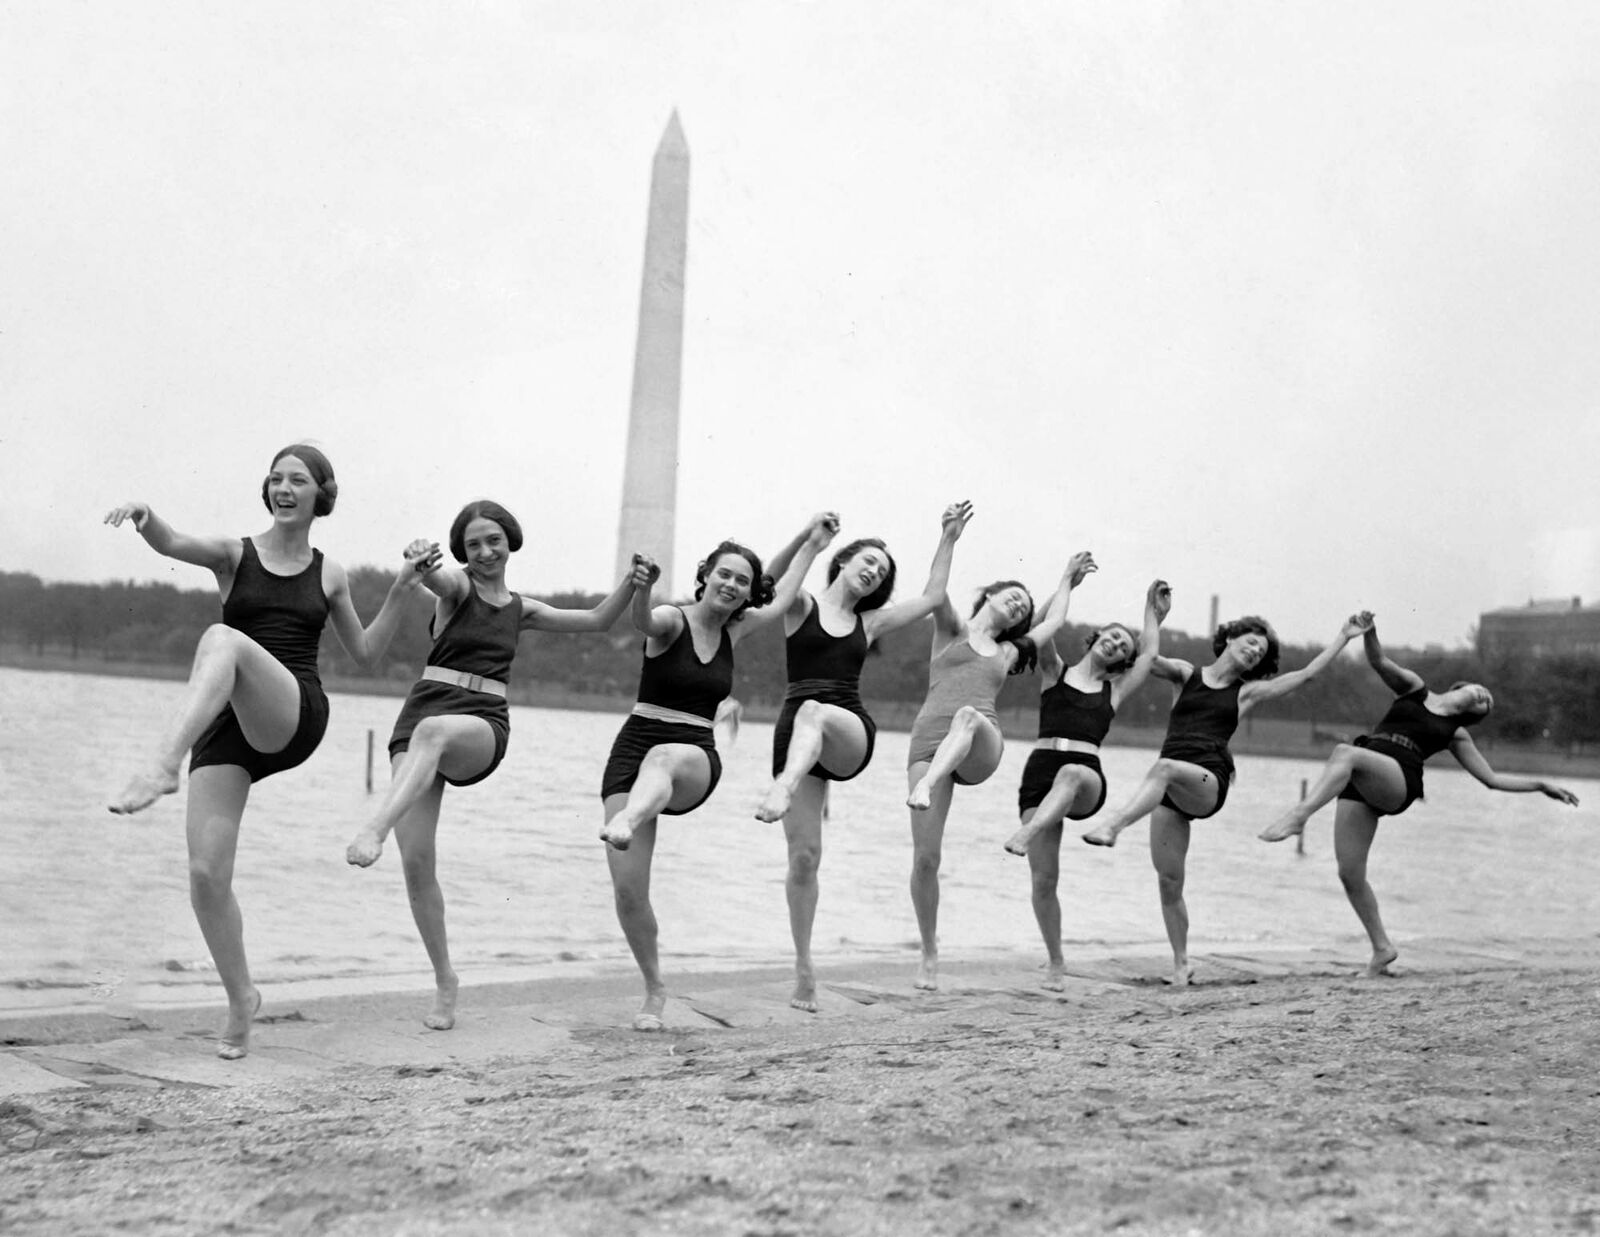 1923 Dancing Bathing Beauties, Arlington Beach, VA Old Photo 8.5